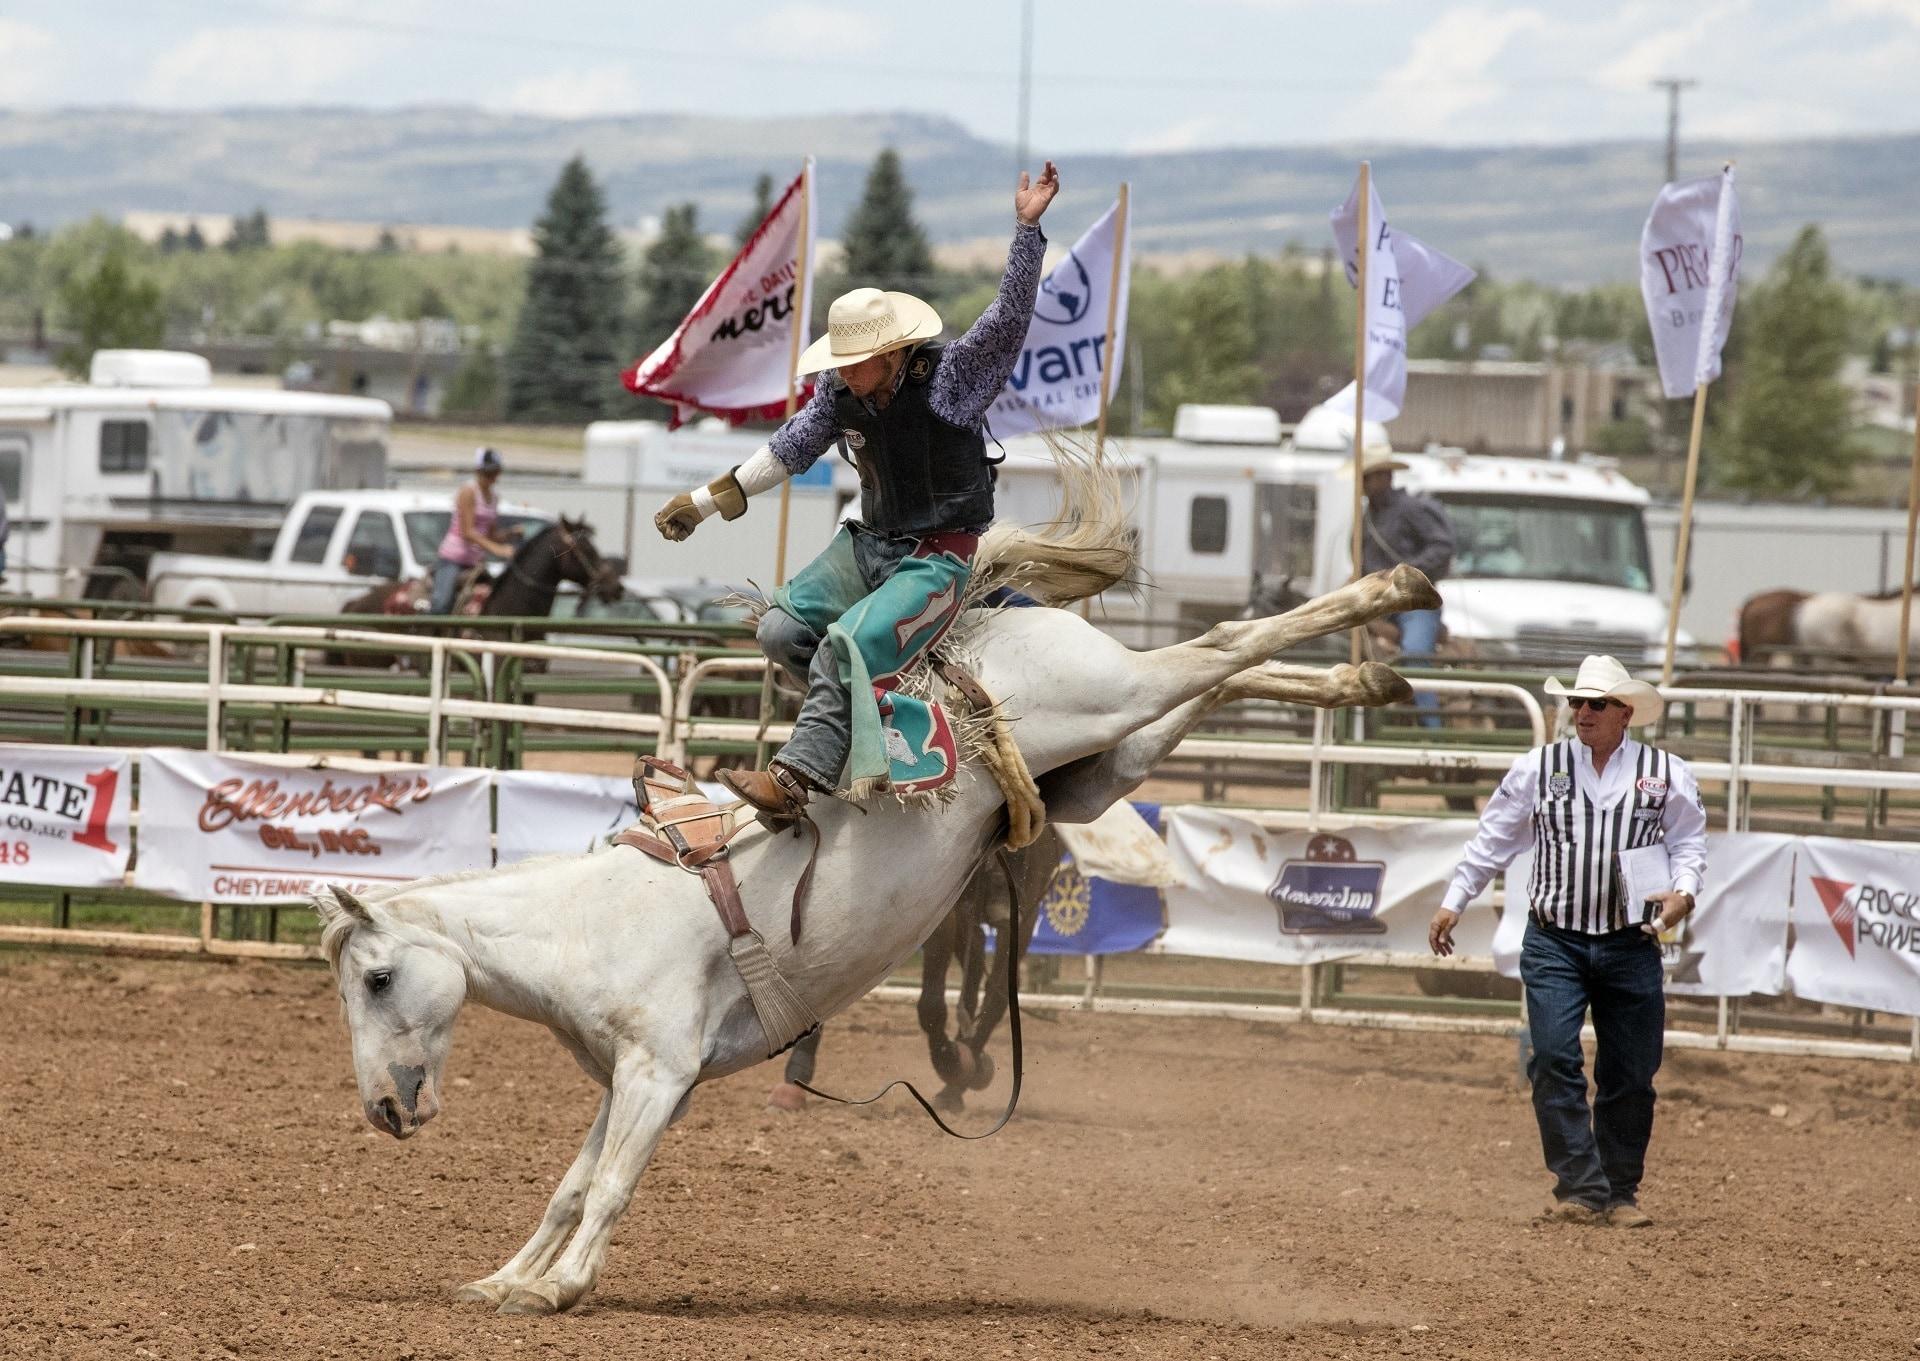 Bronc Rider, Cowboys, Rodeo, Bronco, horse, gambling free image